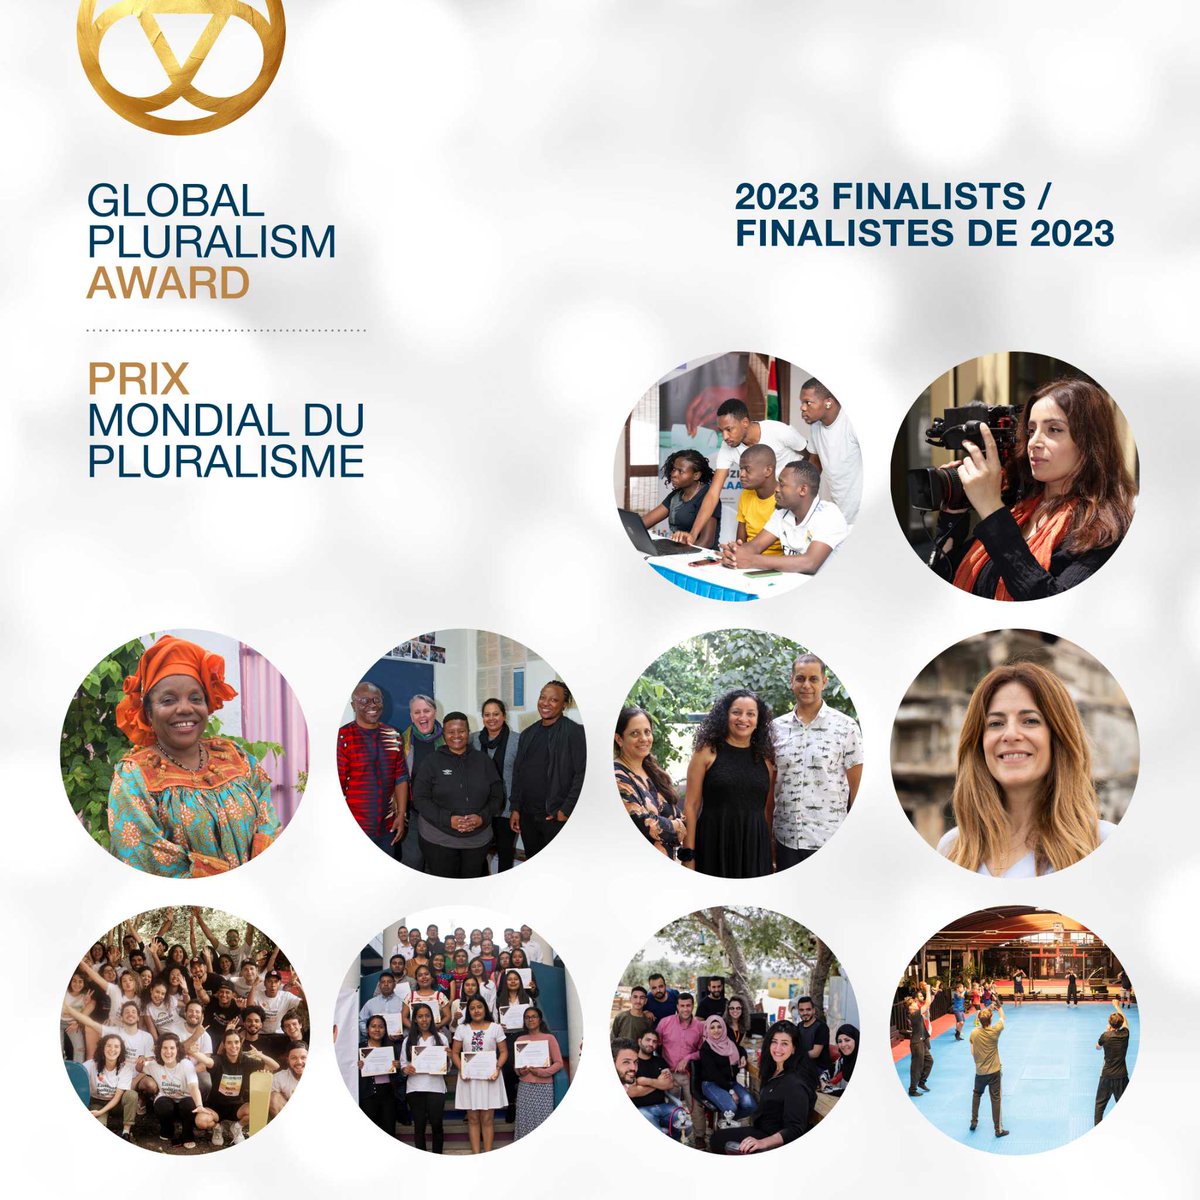 Nous sommes ravis de vous présenter 10 finalistes exceptionnels du #PrixMondialPluralisme. Ces acteurs du changement ont fait preuve d’un engagement exceptionnel pour promouvoir la diversité, l’inclusion et l’unité. Leurs histoires témoignent du pouvoir du pluralisme.